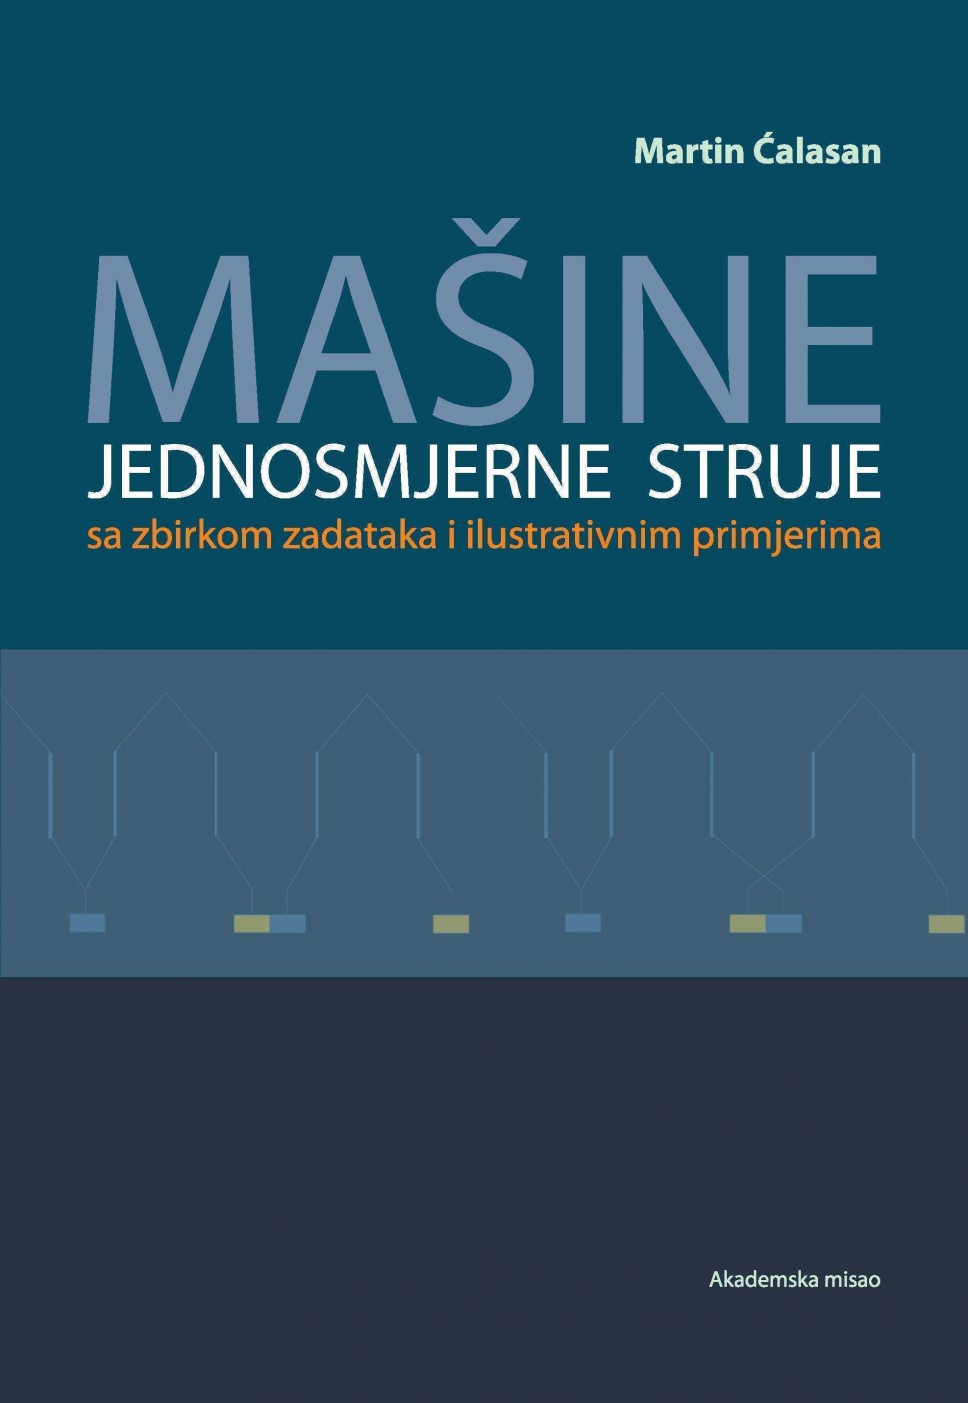 Objavljena knjiga autora doc. dr Martina Ćalasana, u izdanju Akademske misli iz Beograda